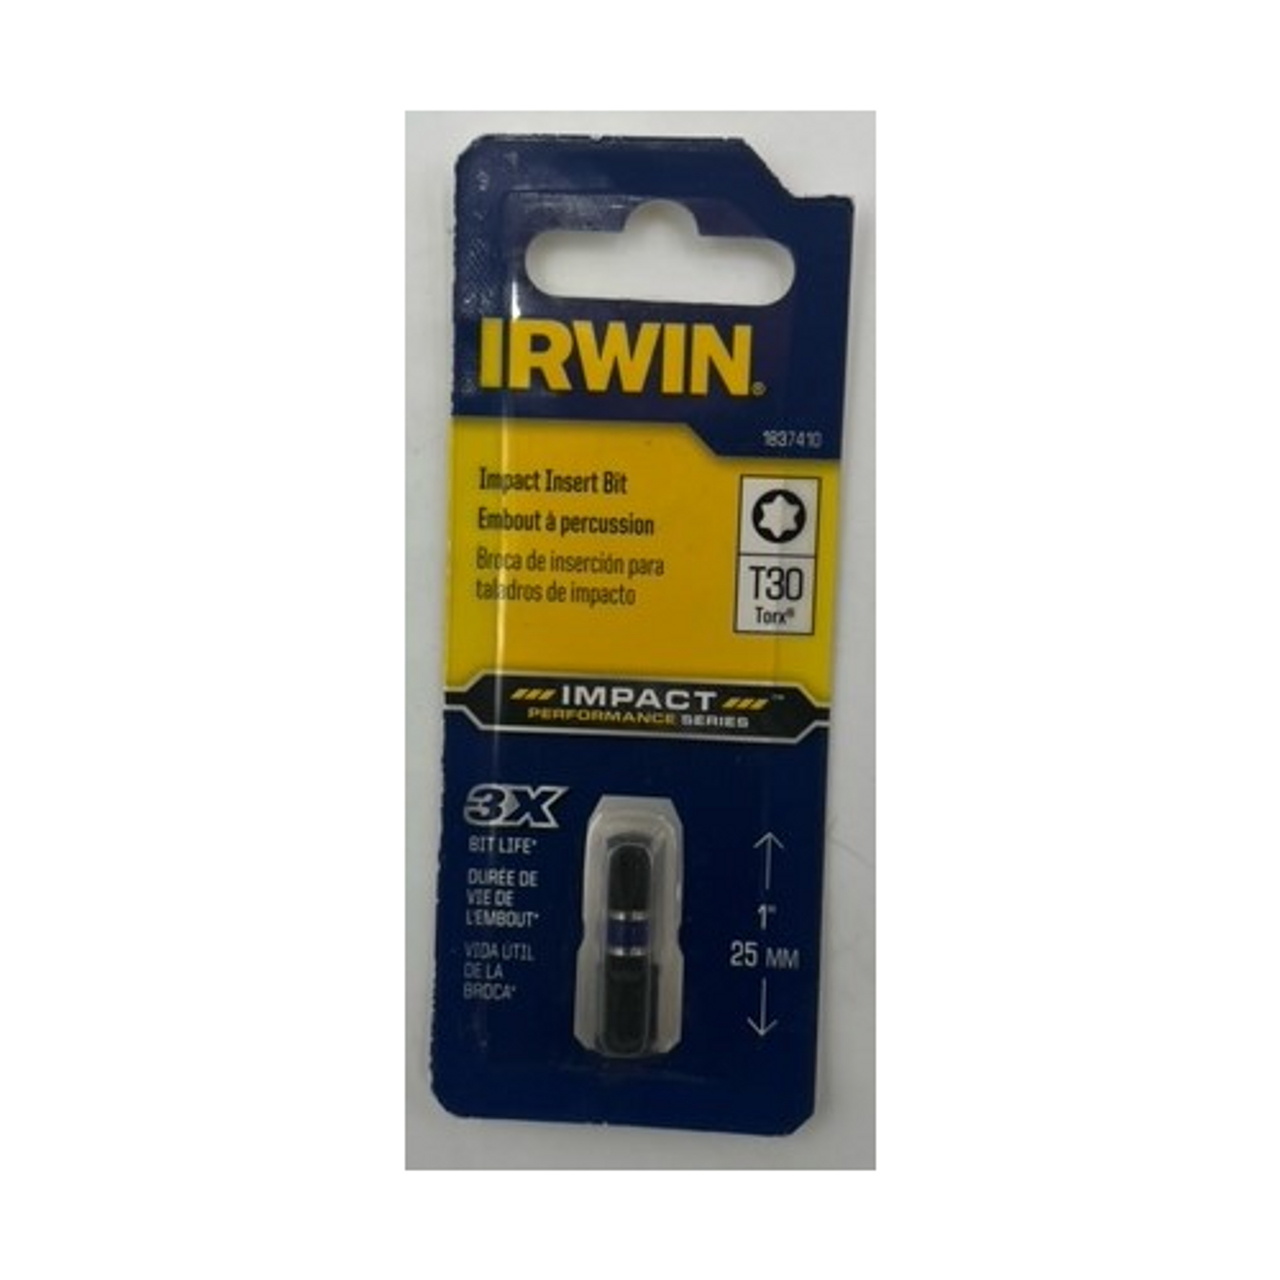 Irwin 1837410 T30 Torx Impact Insert Bit 1 inch - 1 pack